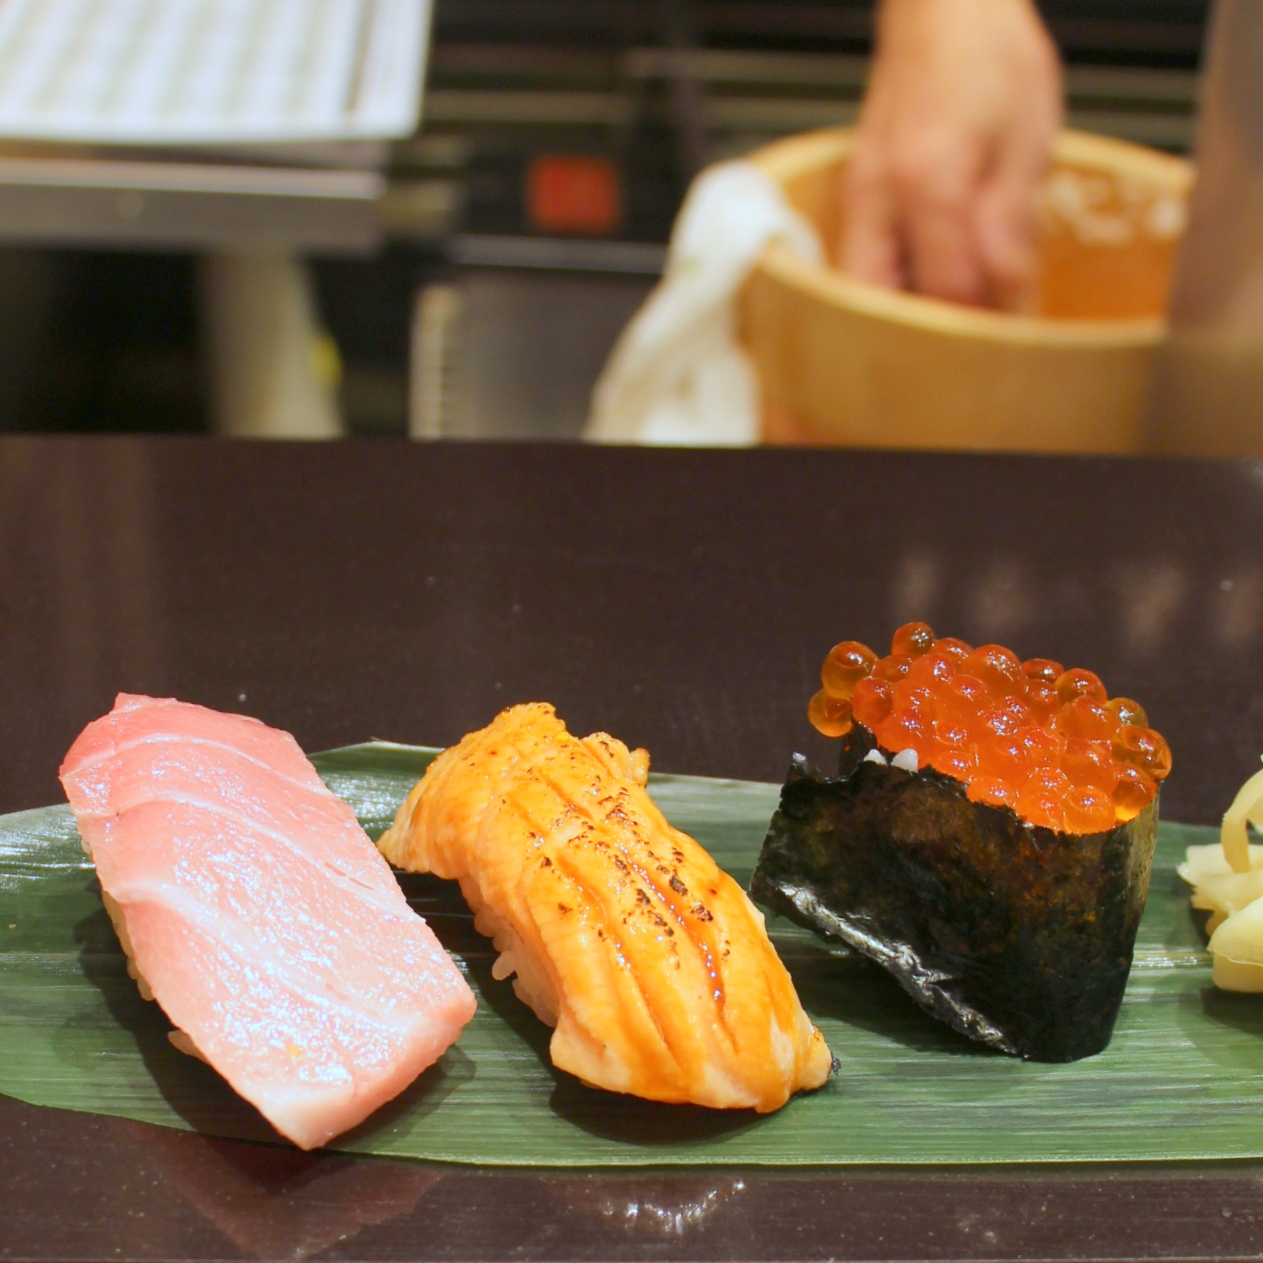 Singapore Japan Food Blog Dairy And Cream 立食い寿司 根室花まる Hokkaido S Nemuro Hanamaru Opens 1st Standing Bar Sushi In Tokyo